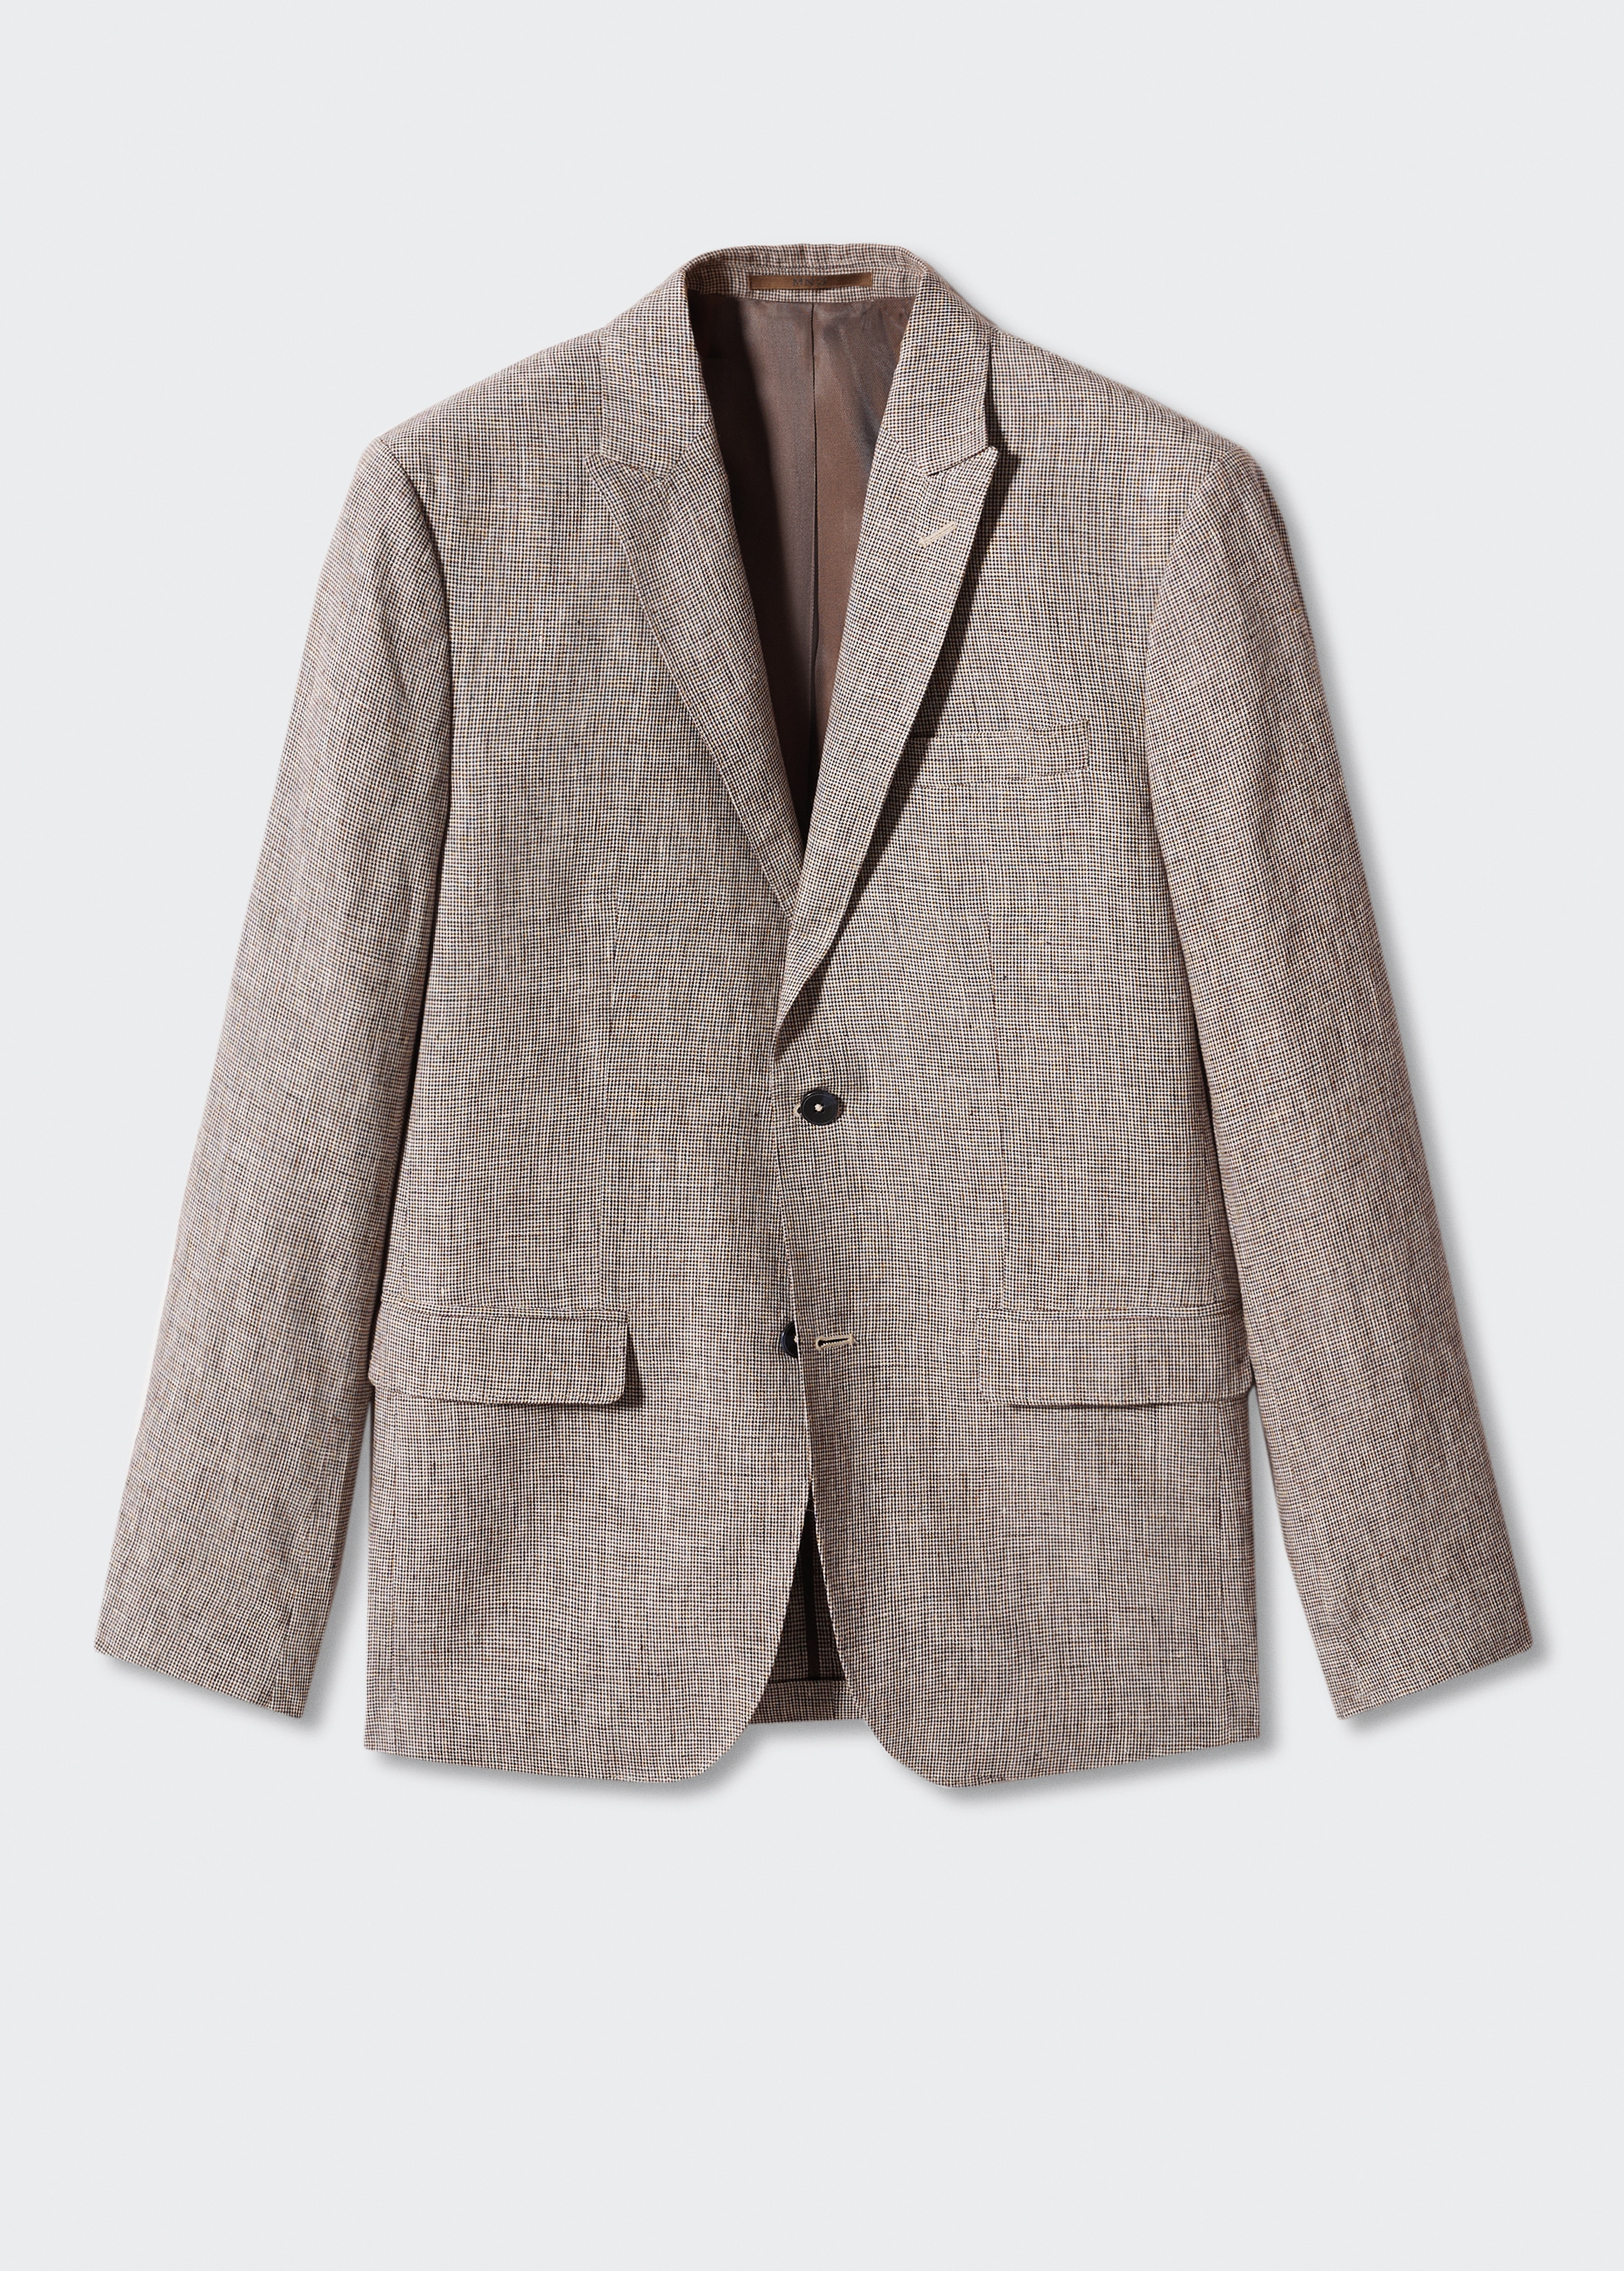 100% linen suit blazer - Article without model